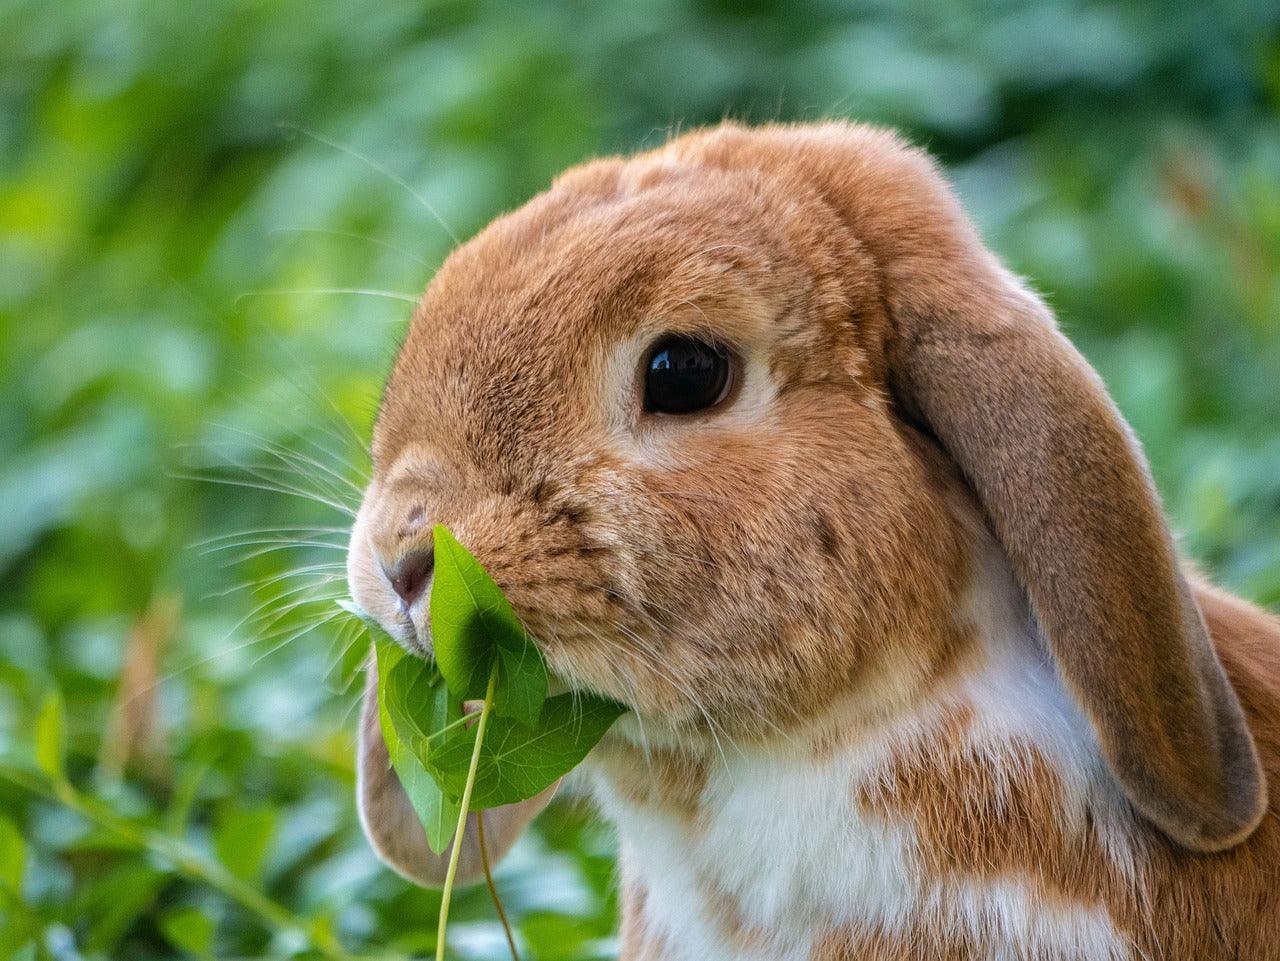 Veelvoorkomende ziektes bij konijnen: Herkenning, preventie en behandeling